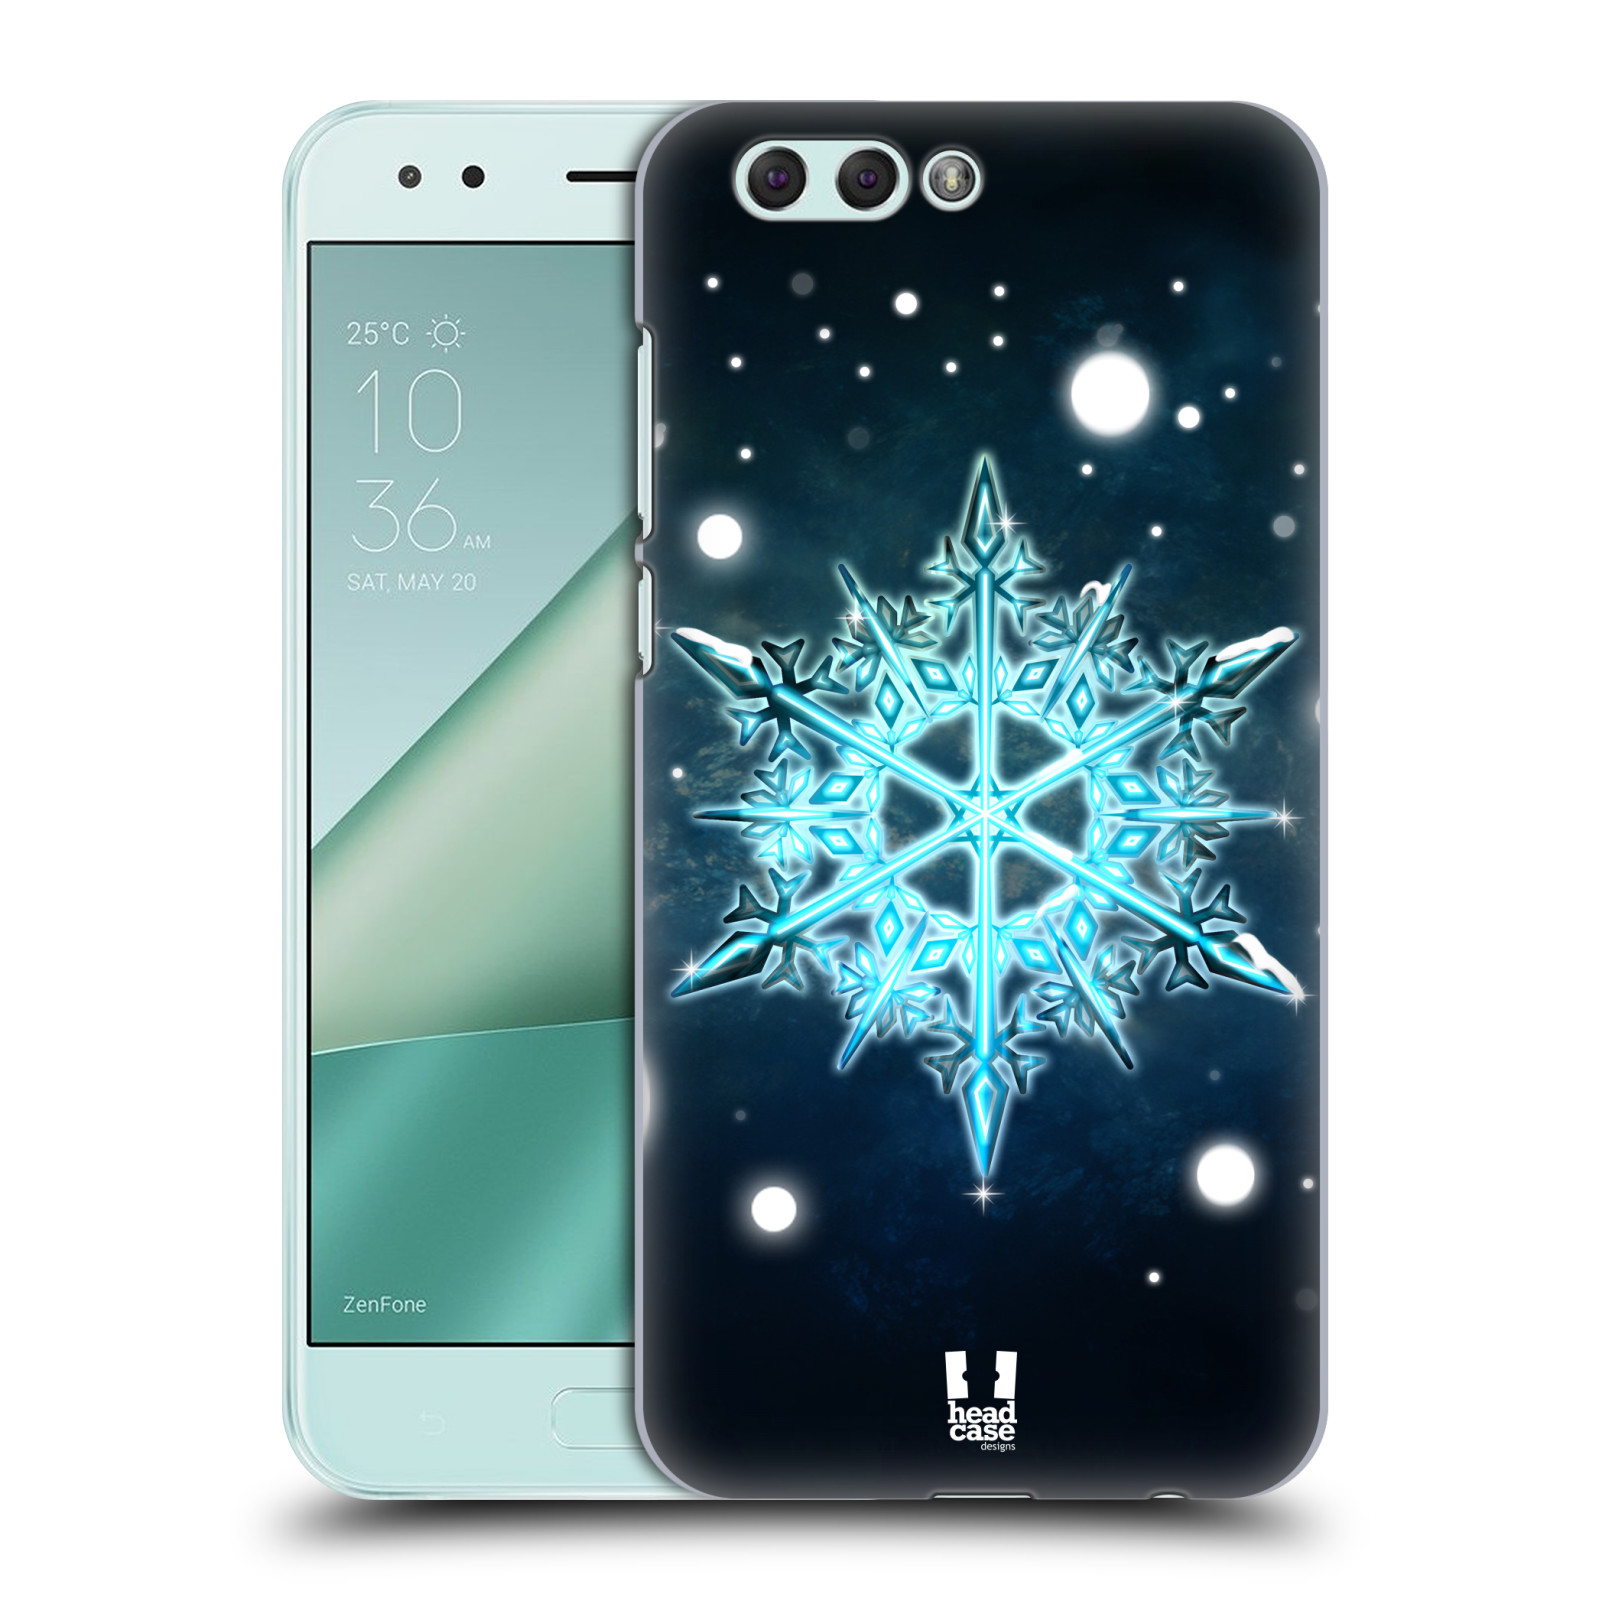 HEAD CASE plastový obal na mobil Asus Zenfone 4 ZE554KL vzor Sněžné vločky modrá tyrkys